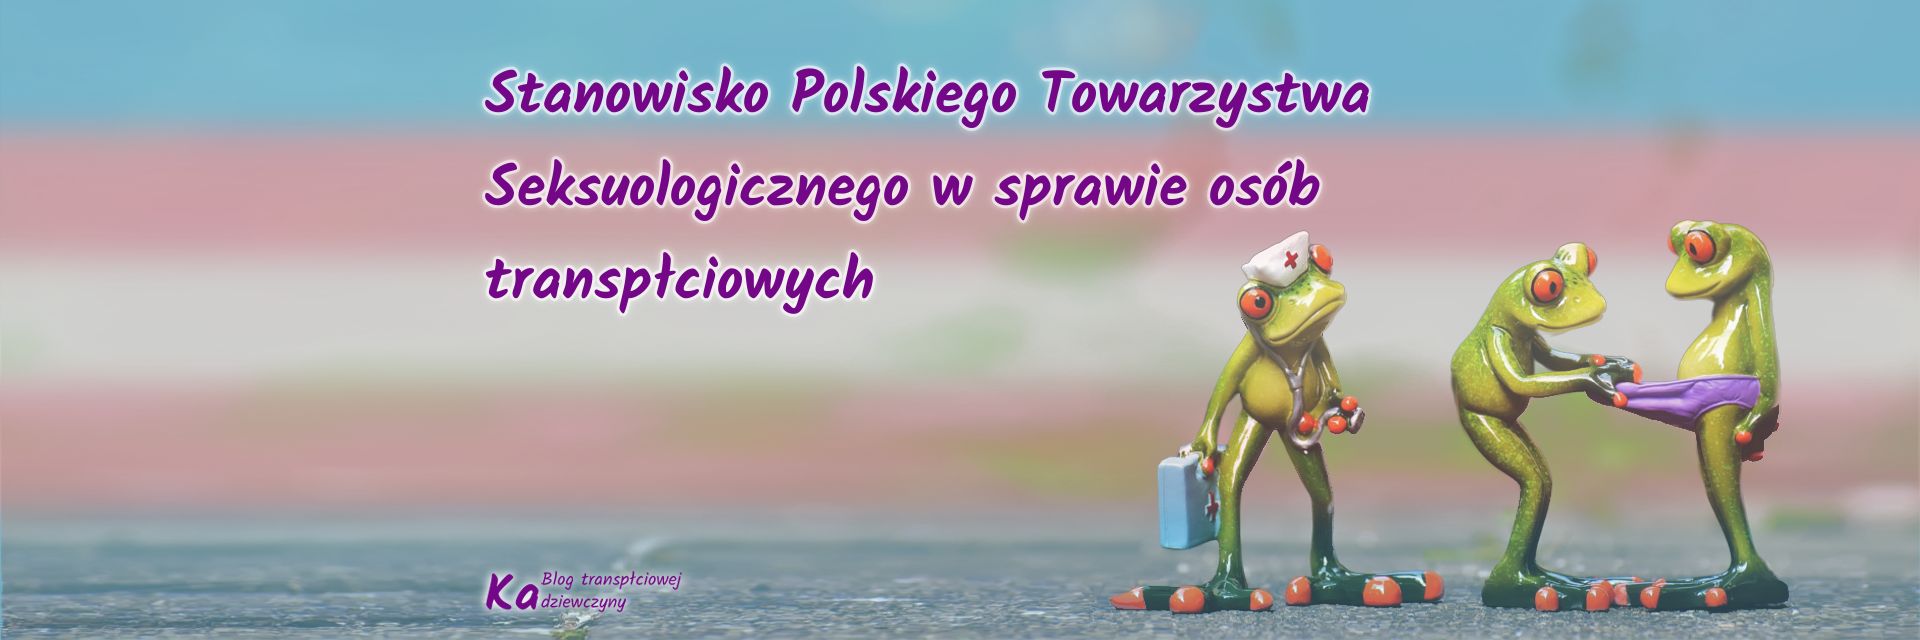 Stanowisko Polskiego Towarzystwa Seksuologicznego w sprawie osób transpłciowych